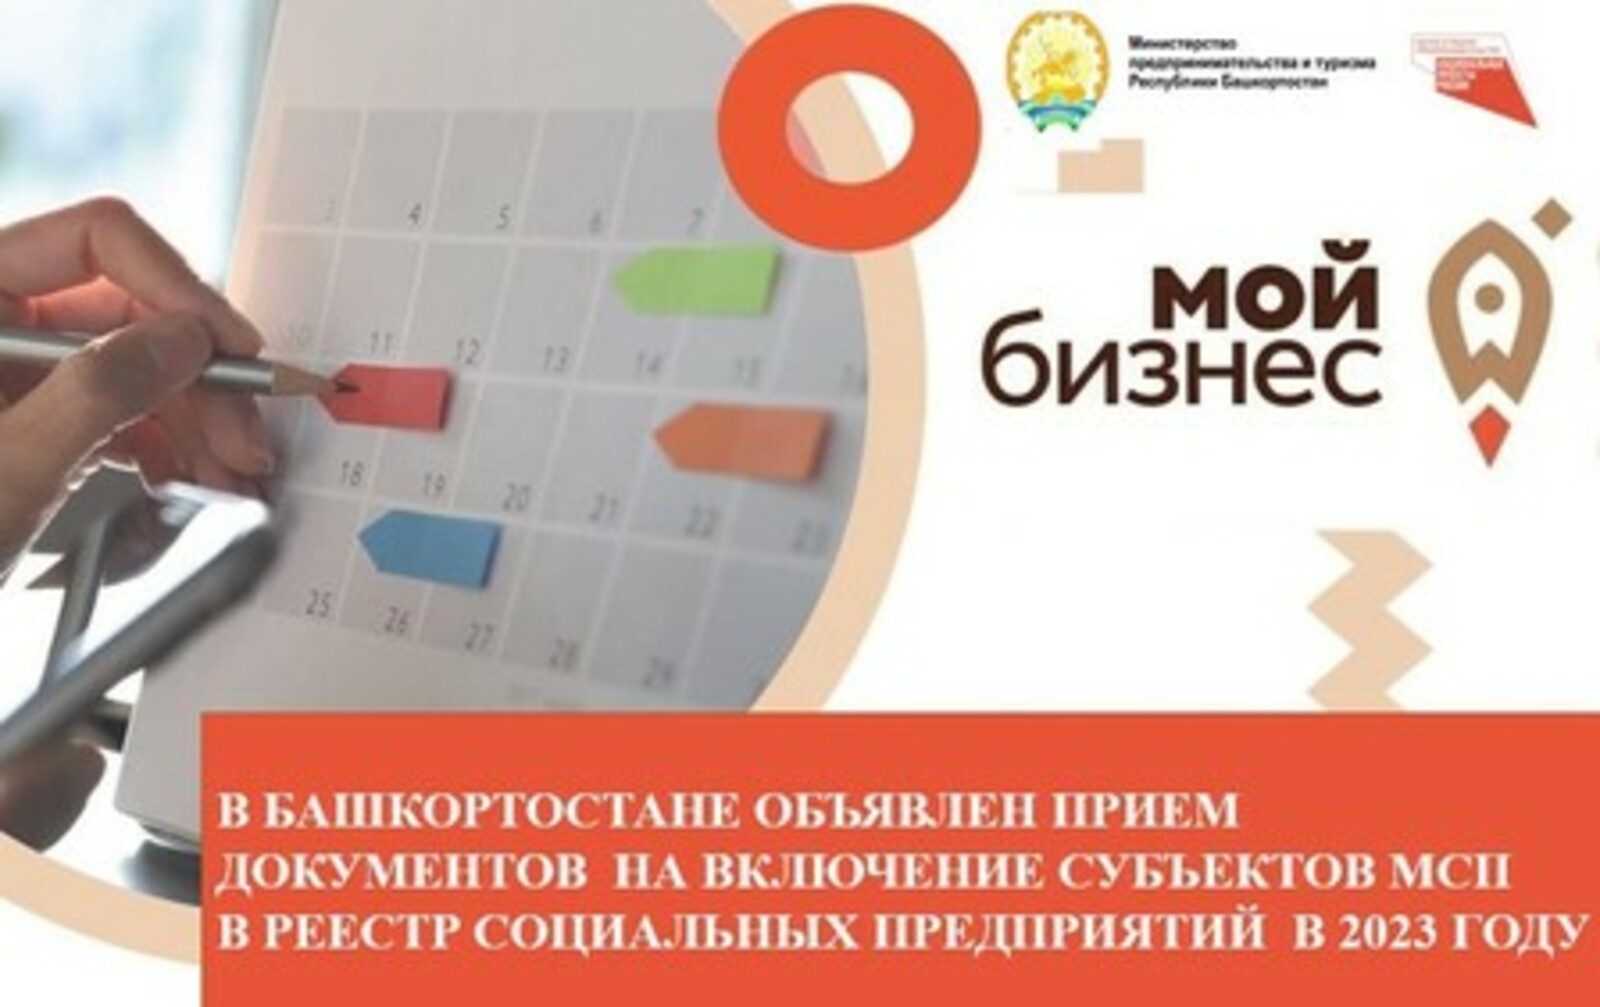 В Башкортостане объявлен прием документов на включение субъектов МСП в реестр социальных предприятий в 2023 году